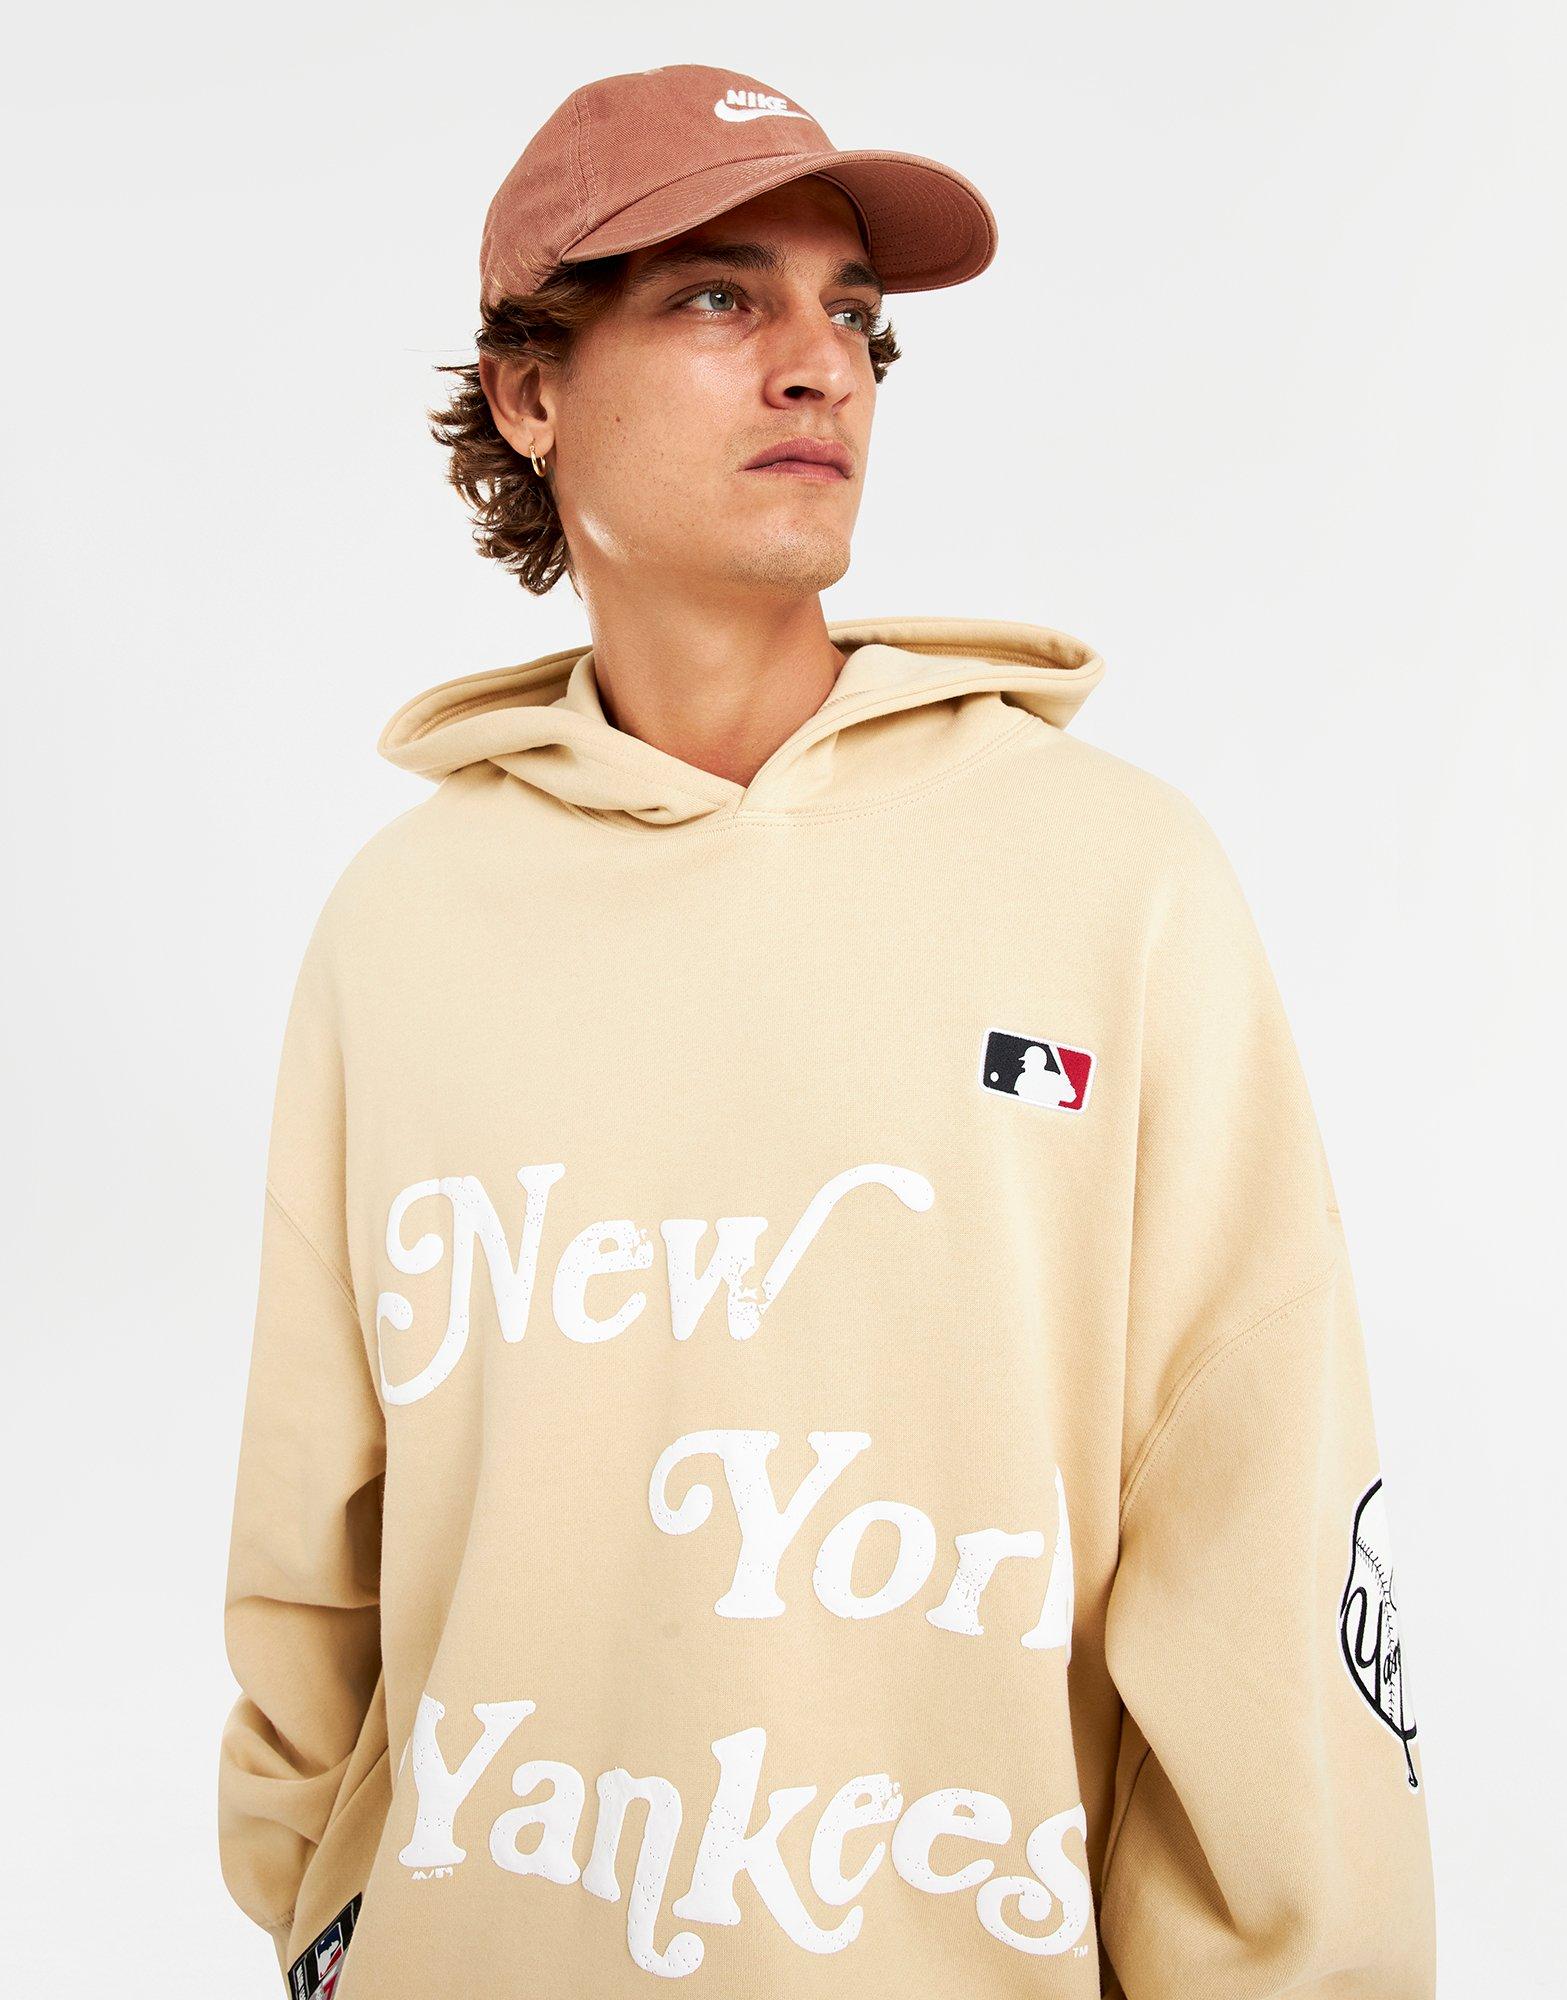 New York Yankees Sweatshirt, Yankees Hoodies, Yankees Fleece